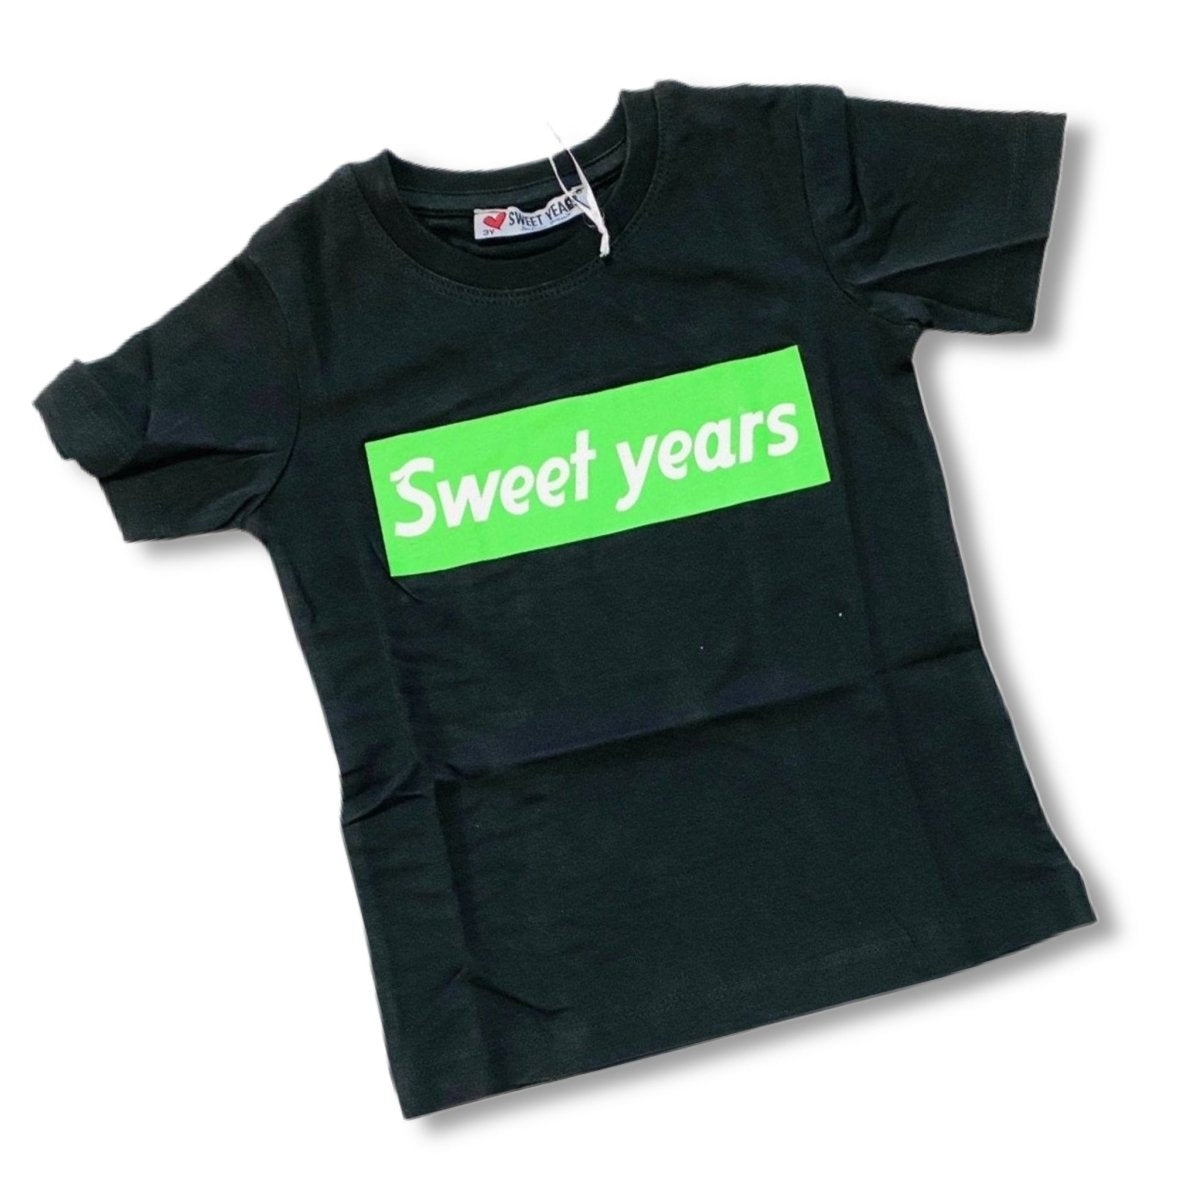 T-shirt Sweet Years - Mstore016